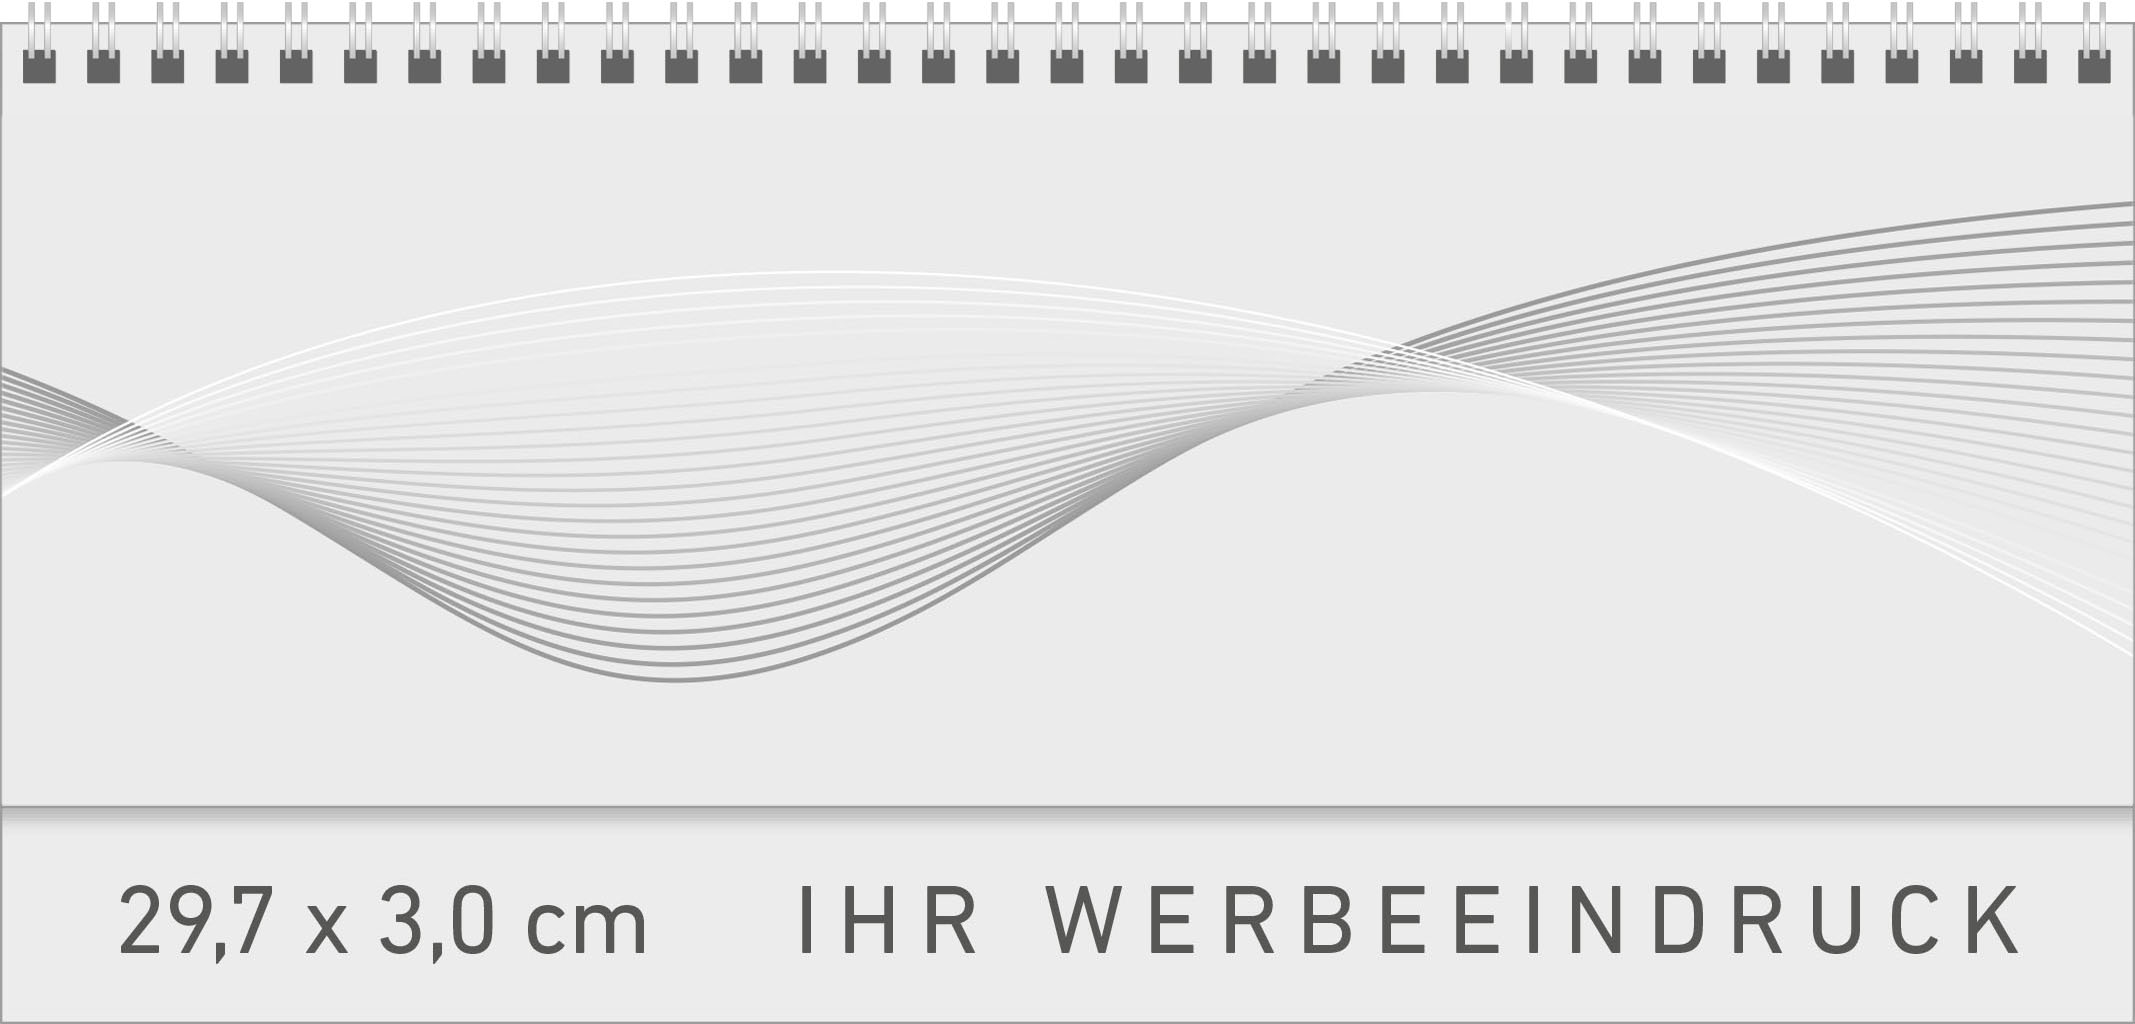 Tischquerkalender Amrum - Green Edition
Karton
1 Woche / 2 Seiten
Deutsch grau